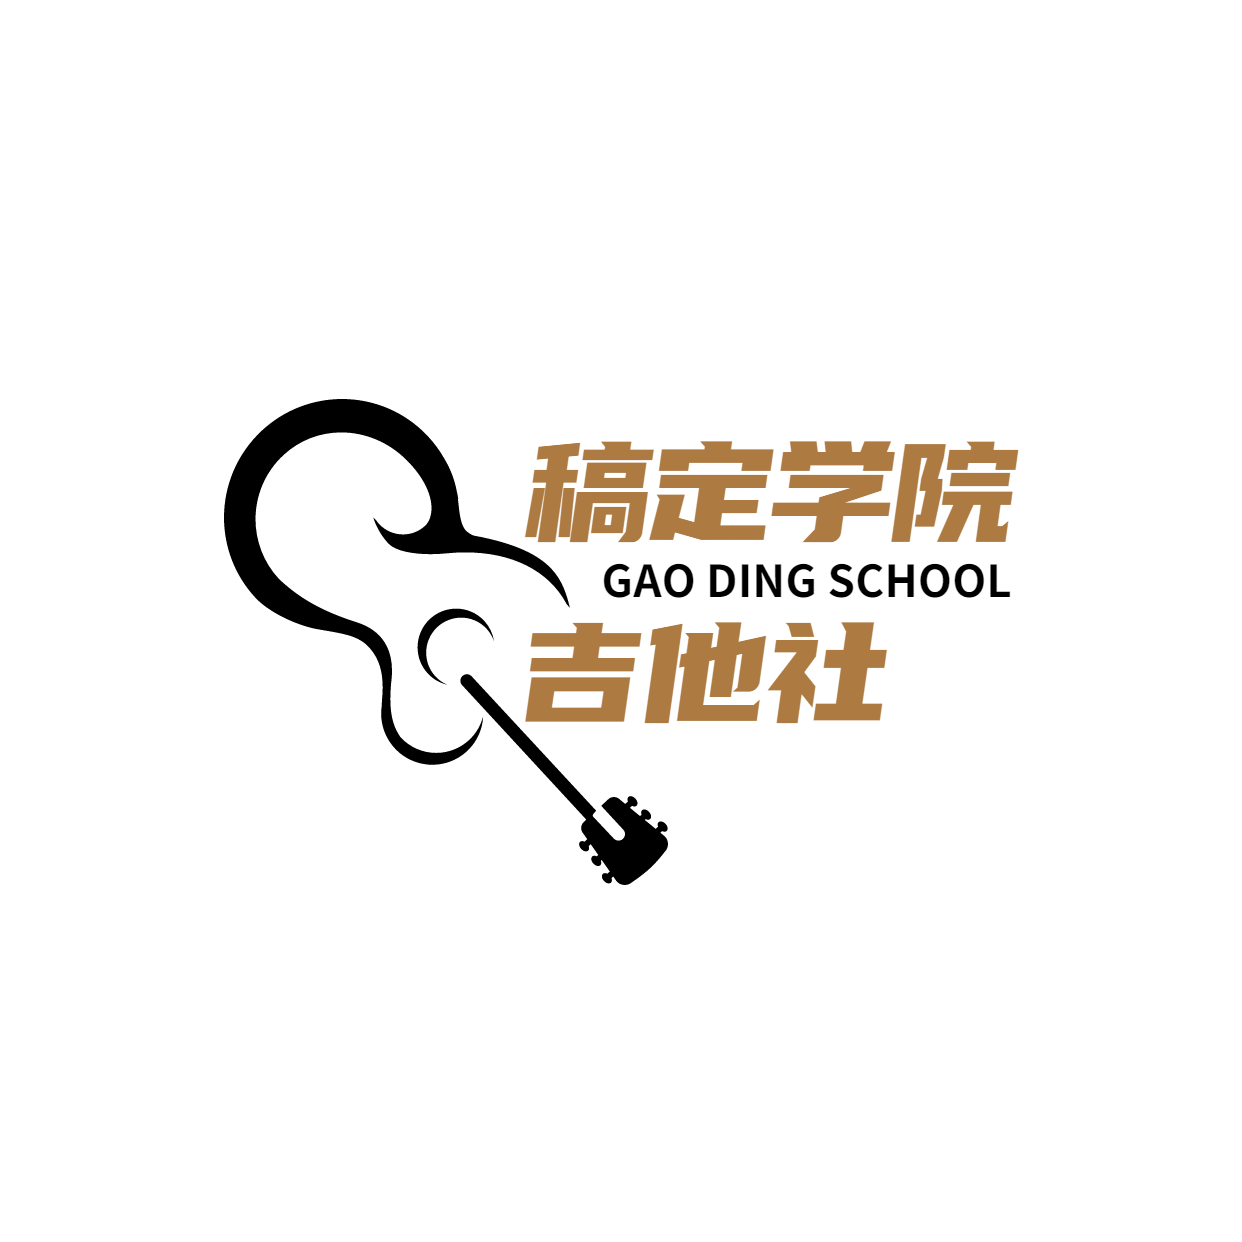 教育培训机构吉他班logo